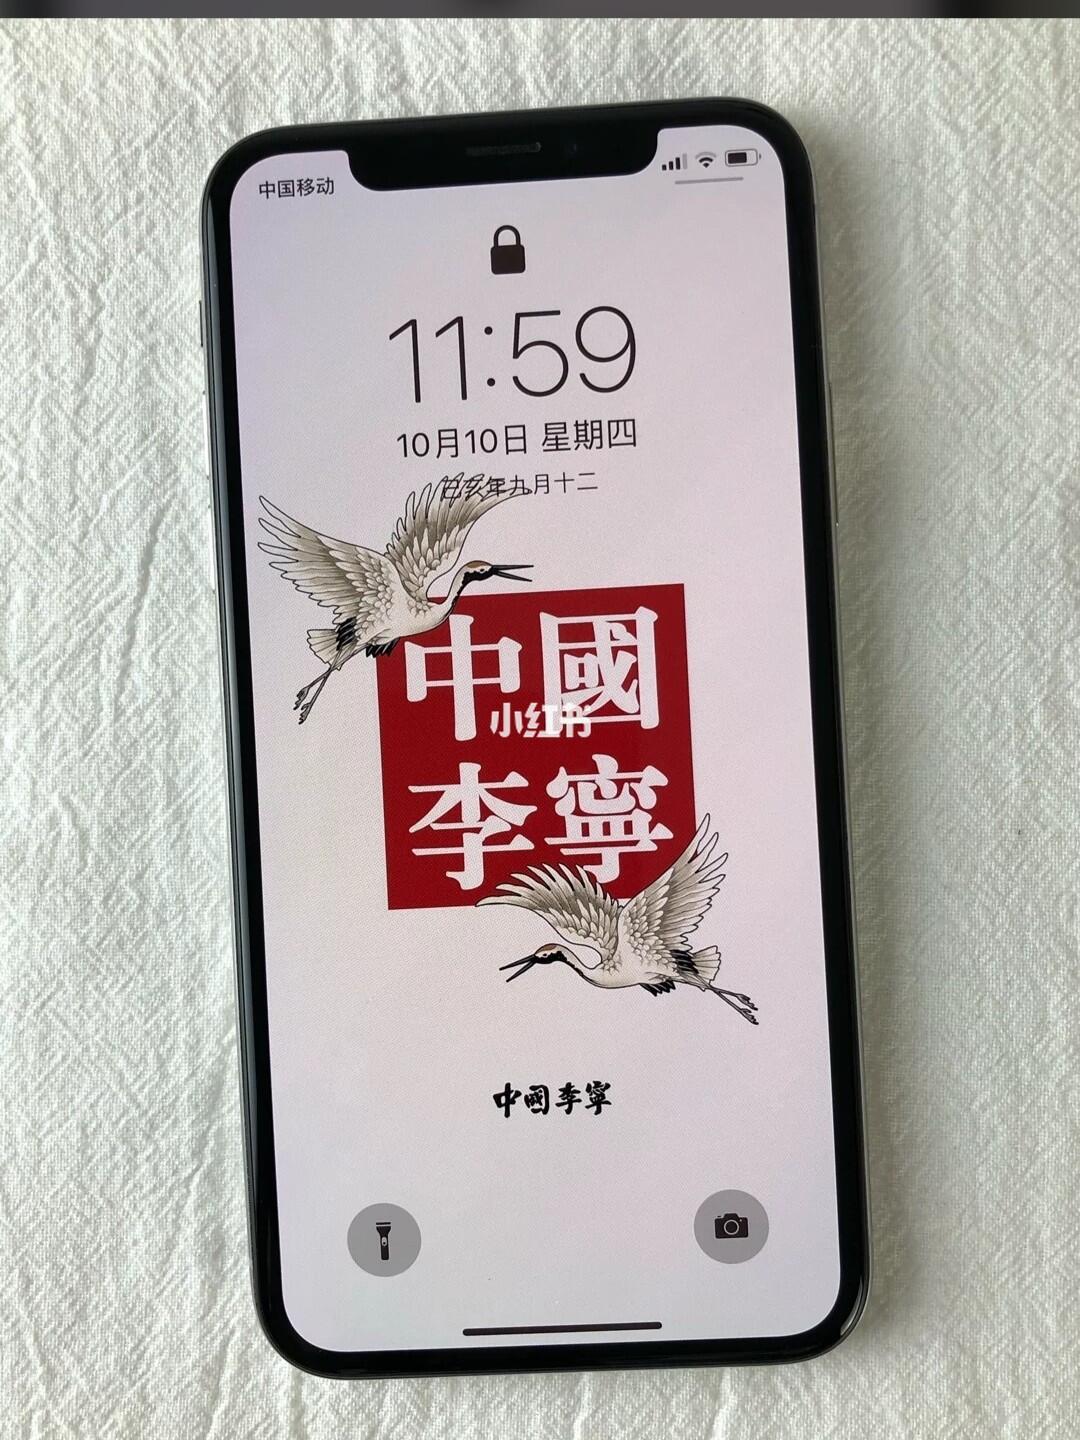 中国李宁壁纸iphone 搜狗搜索